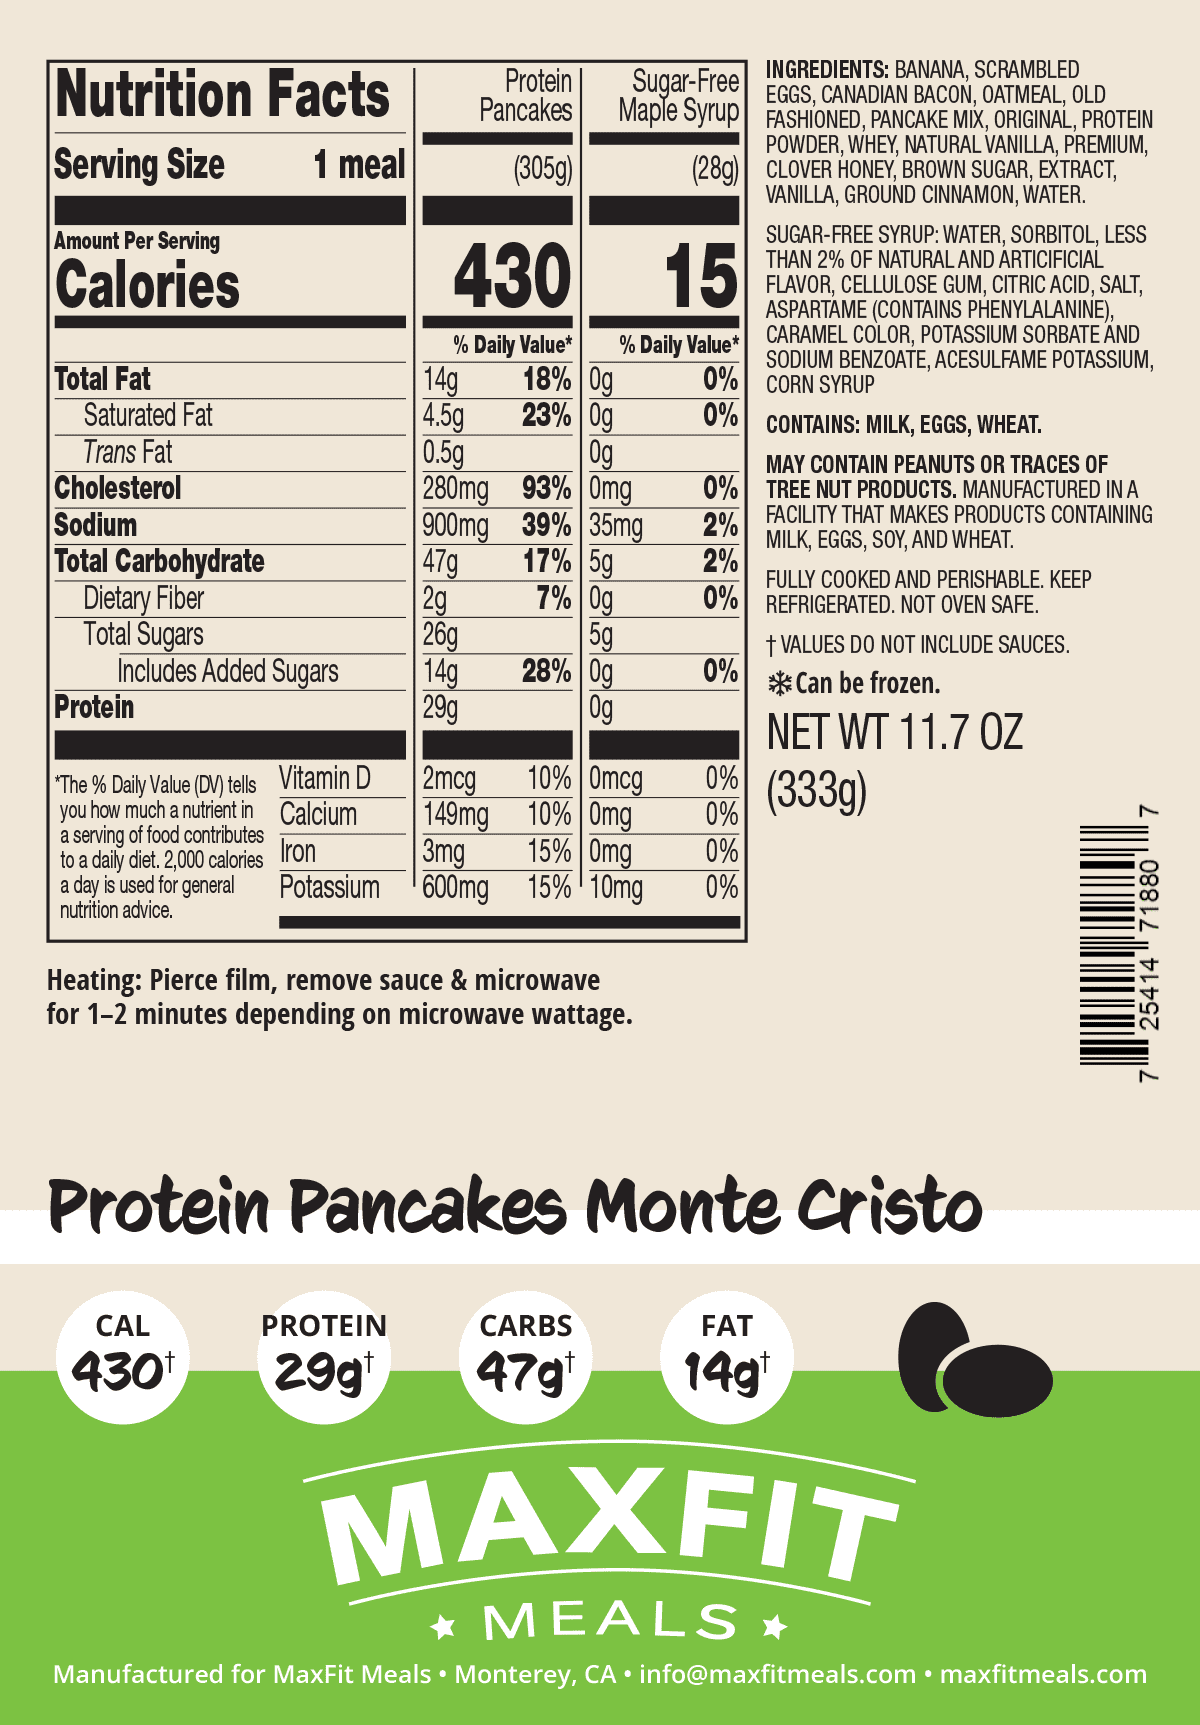 Protein Pancakes Monte Cristo